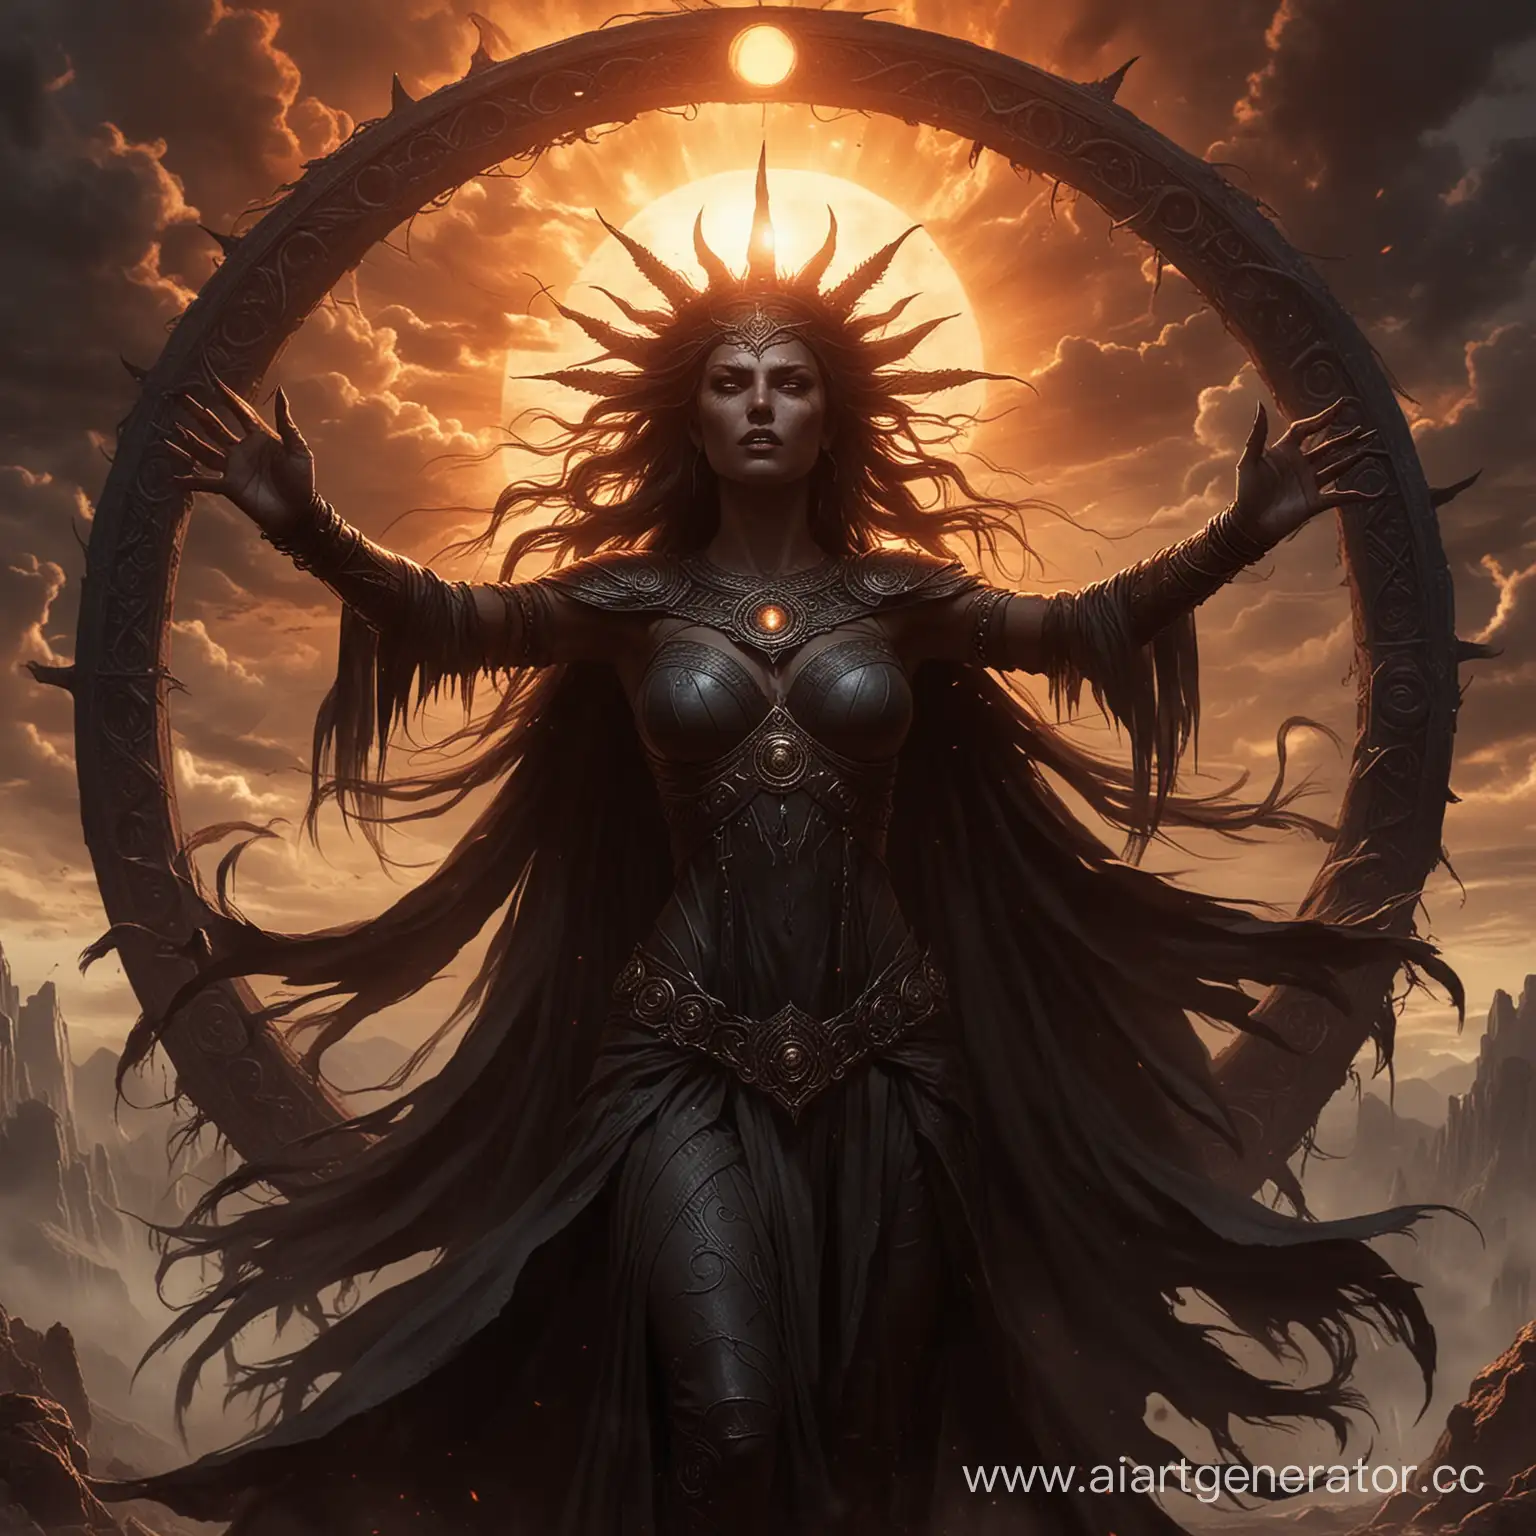 Затемнина, дева Чëрного Солнца – демоническая сущность, приходящая на Землю раз в столение. В своëм стремлении низвергнуть власть небесных богов, она затмевает Солнце силой своей ненависти, погружая мир в первобытный ужас.